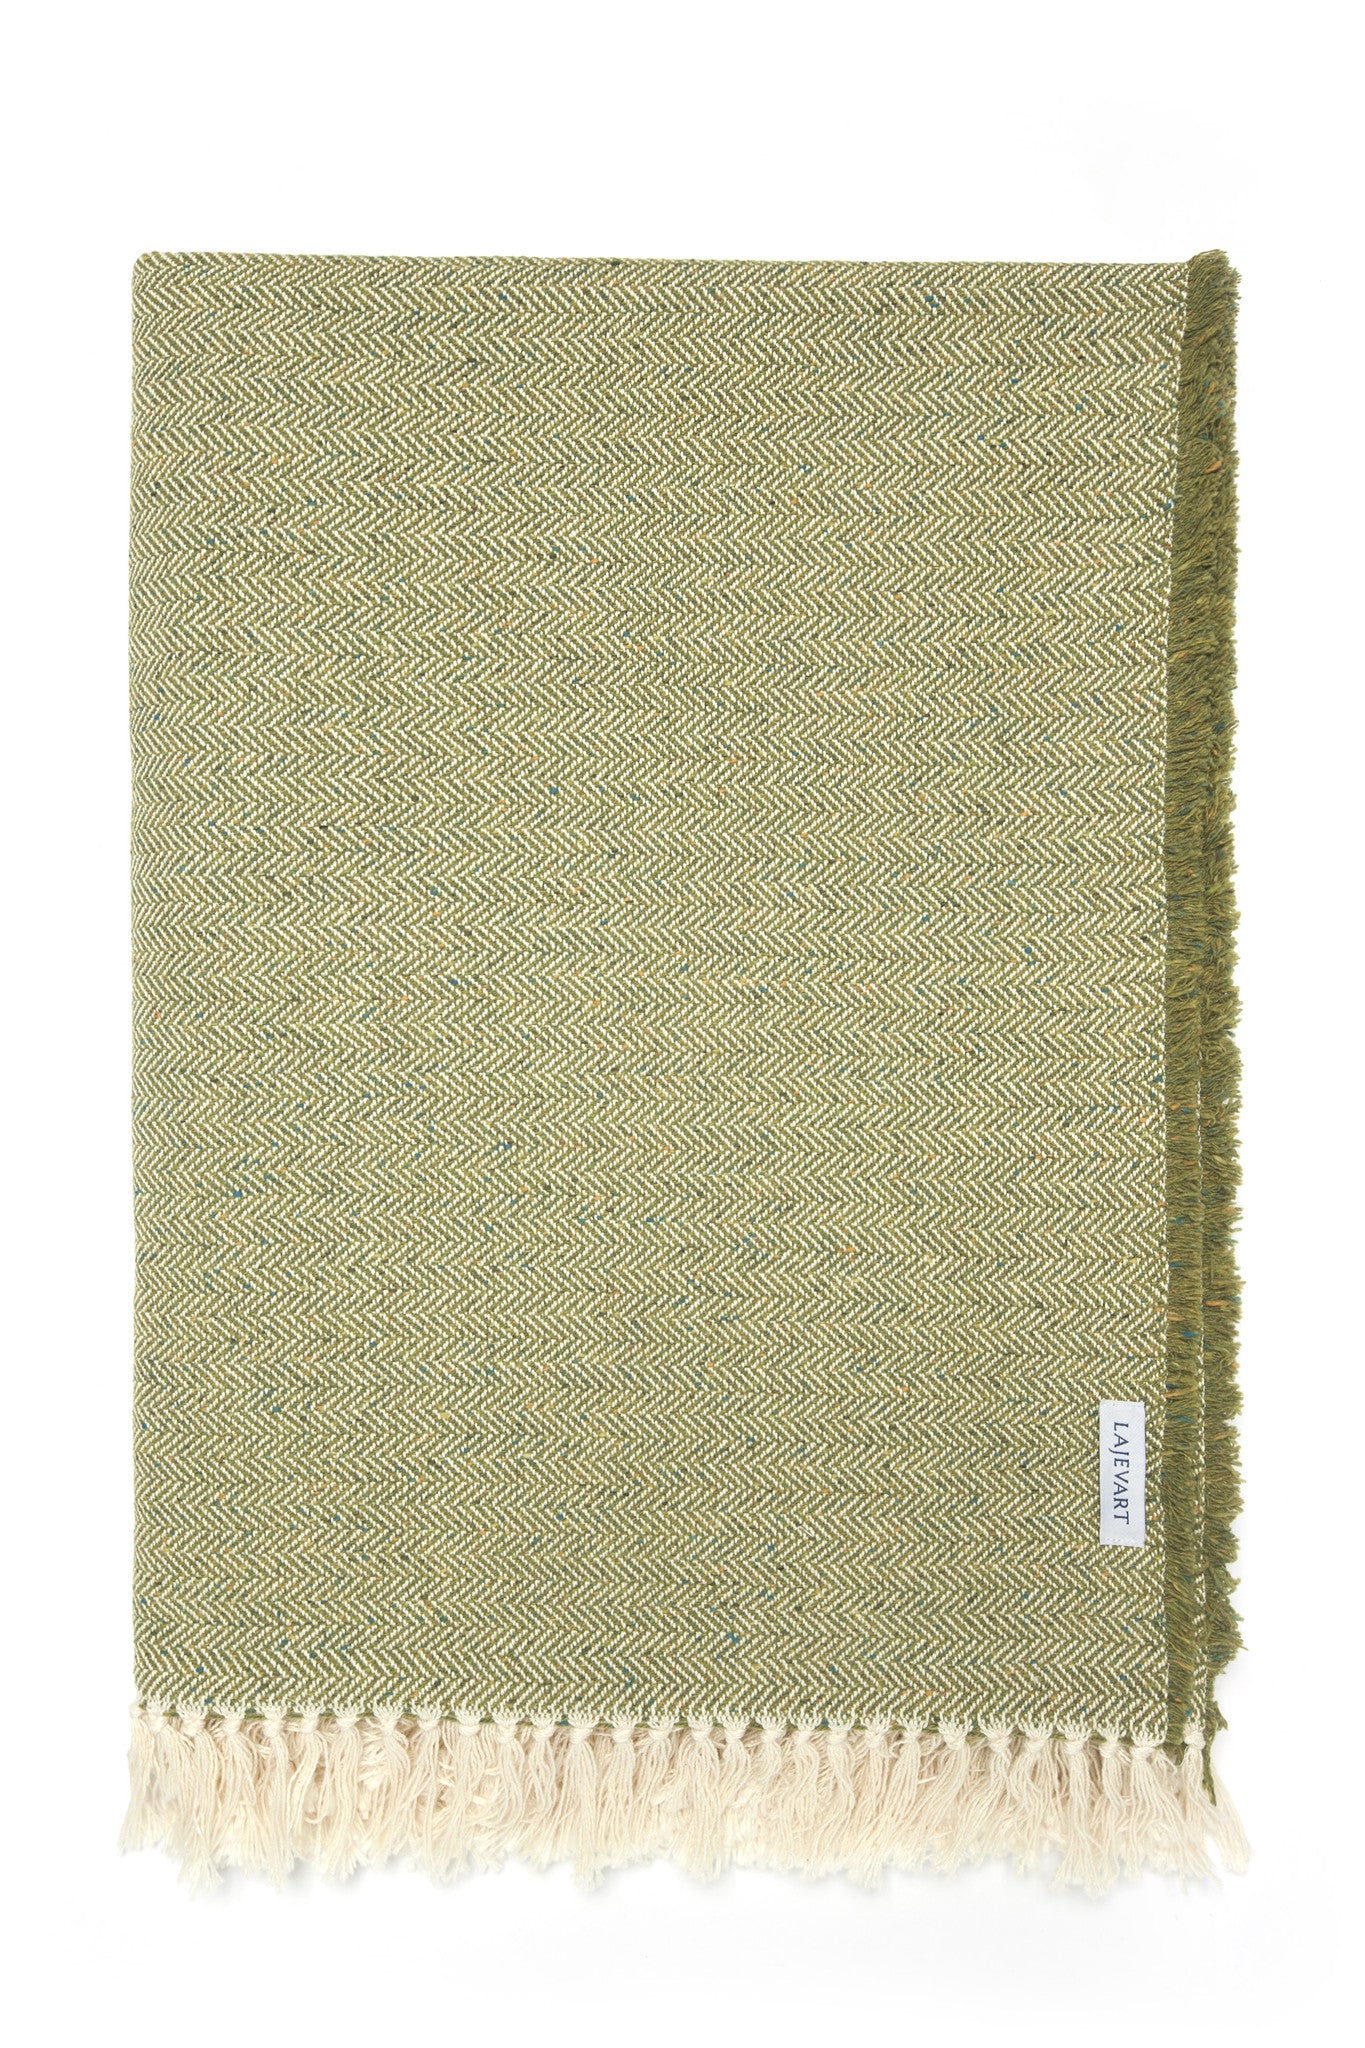 Blanket - Olive Green